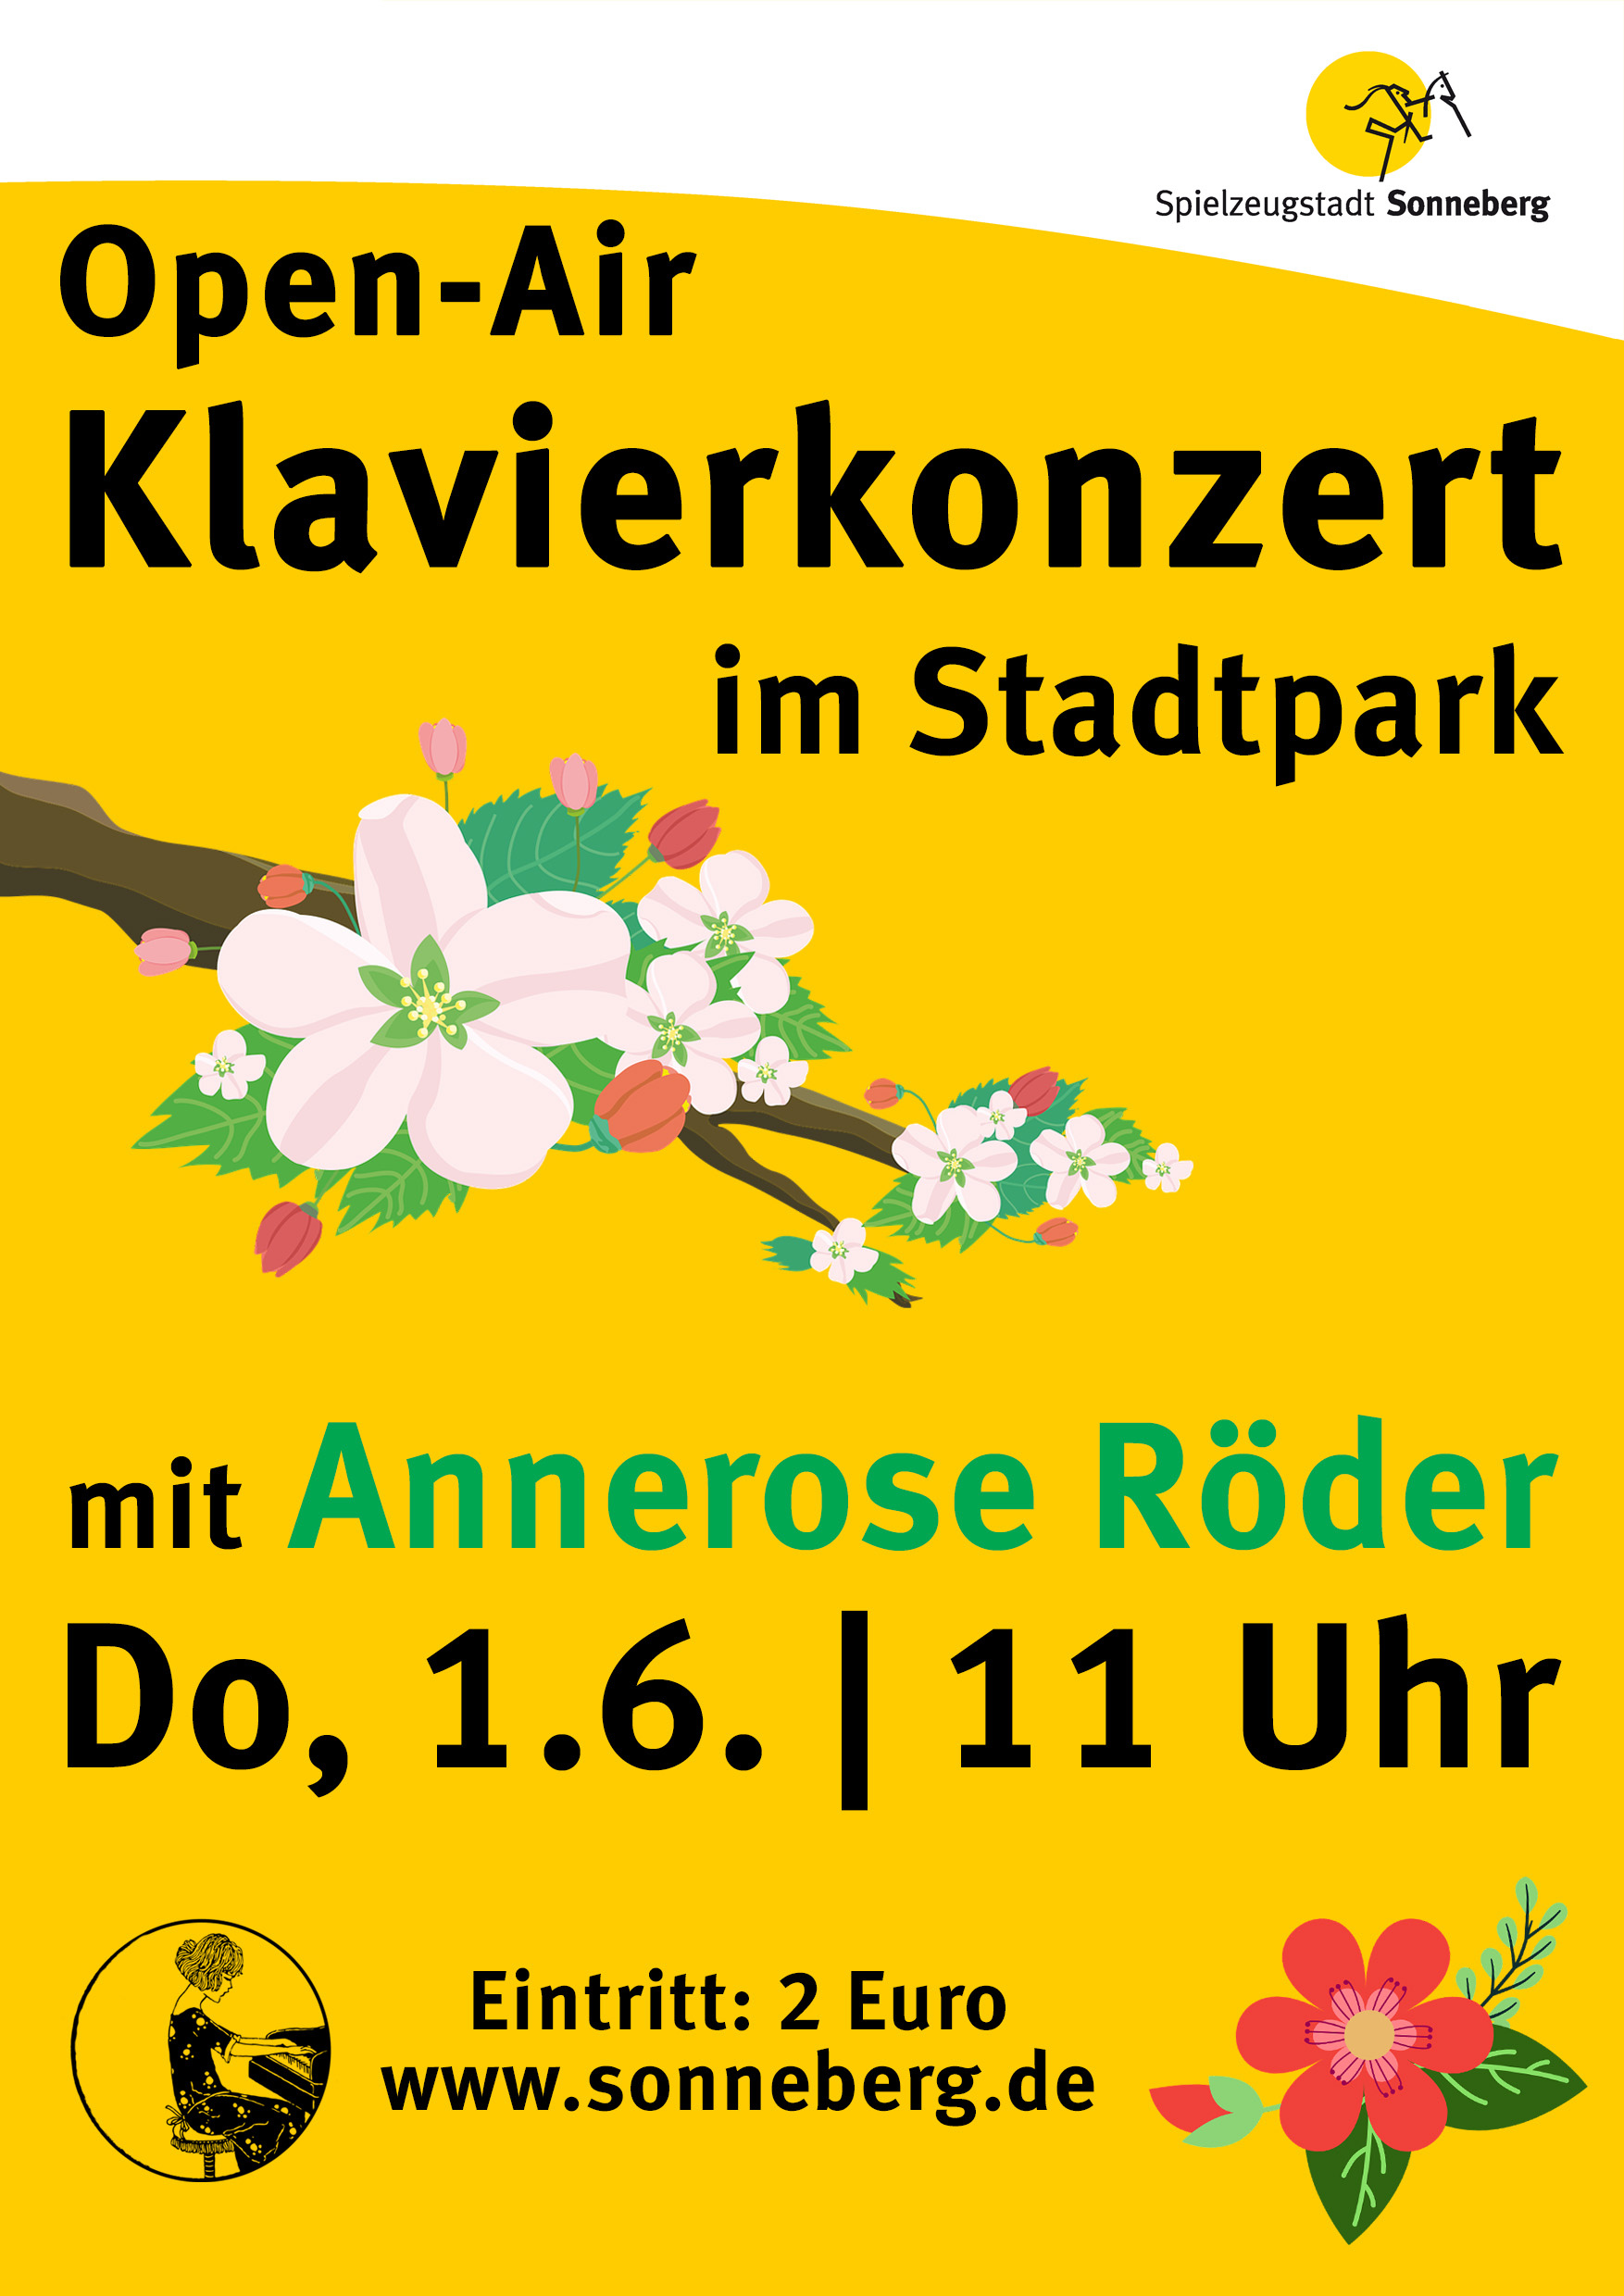 Eine gelbe Grafik mit der Aufschrift: Open-Air Klavierkonzert im Stadtpark mit Annerose Röder.